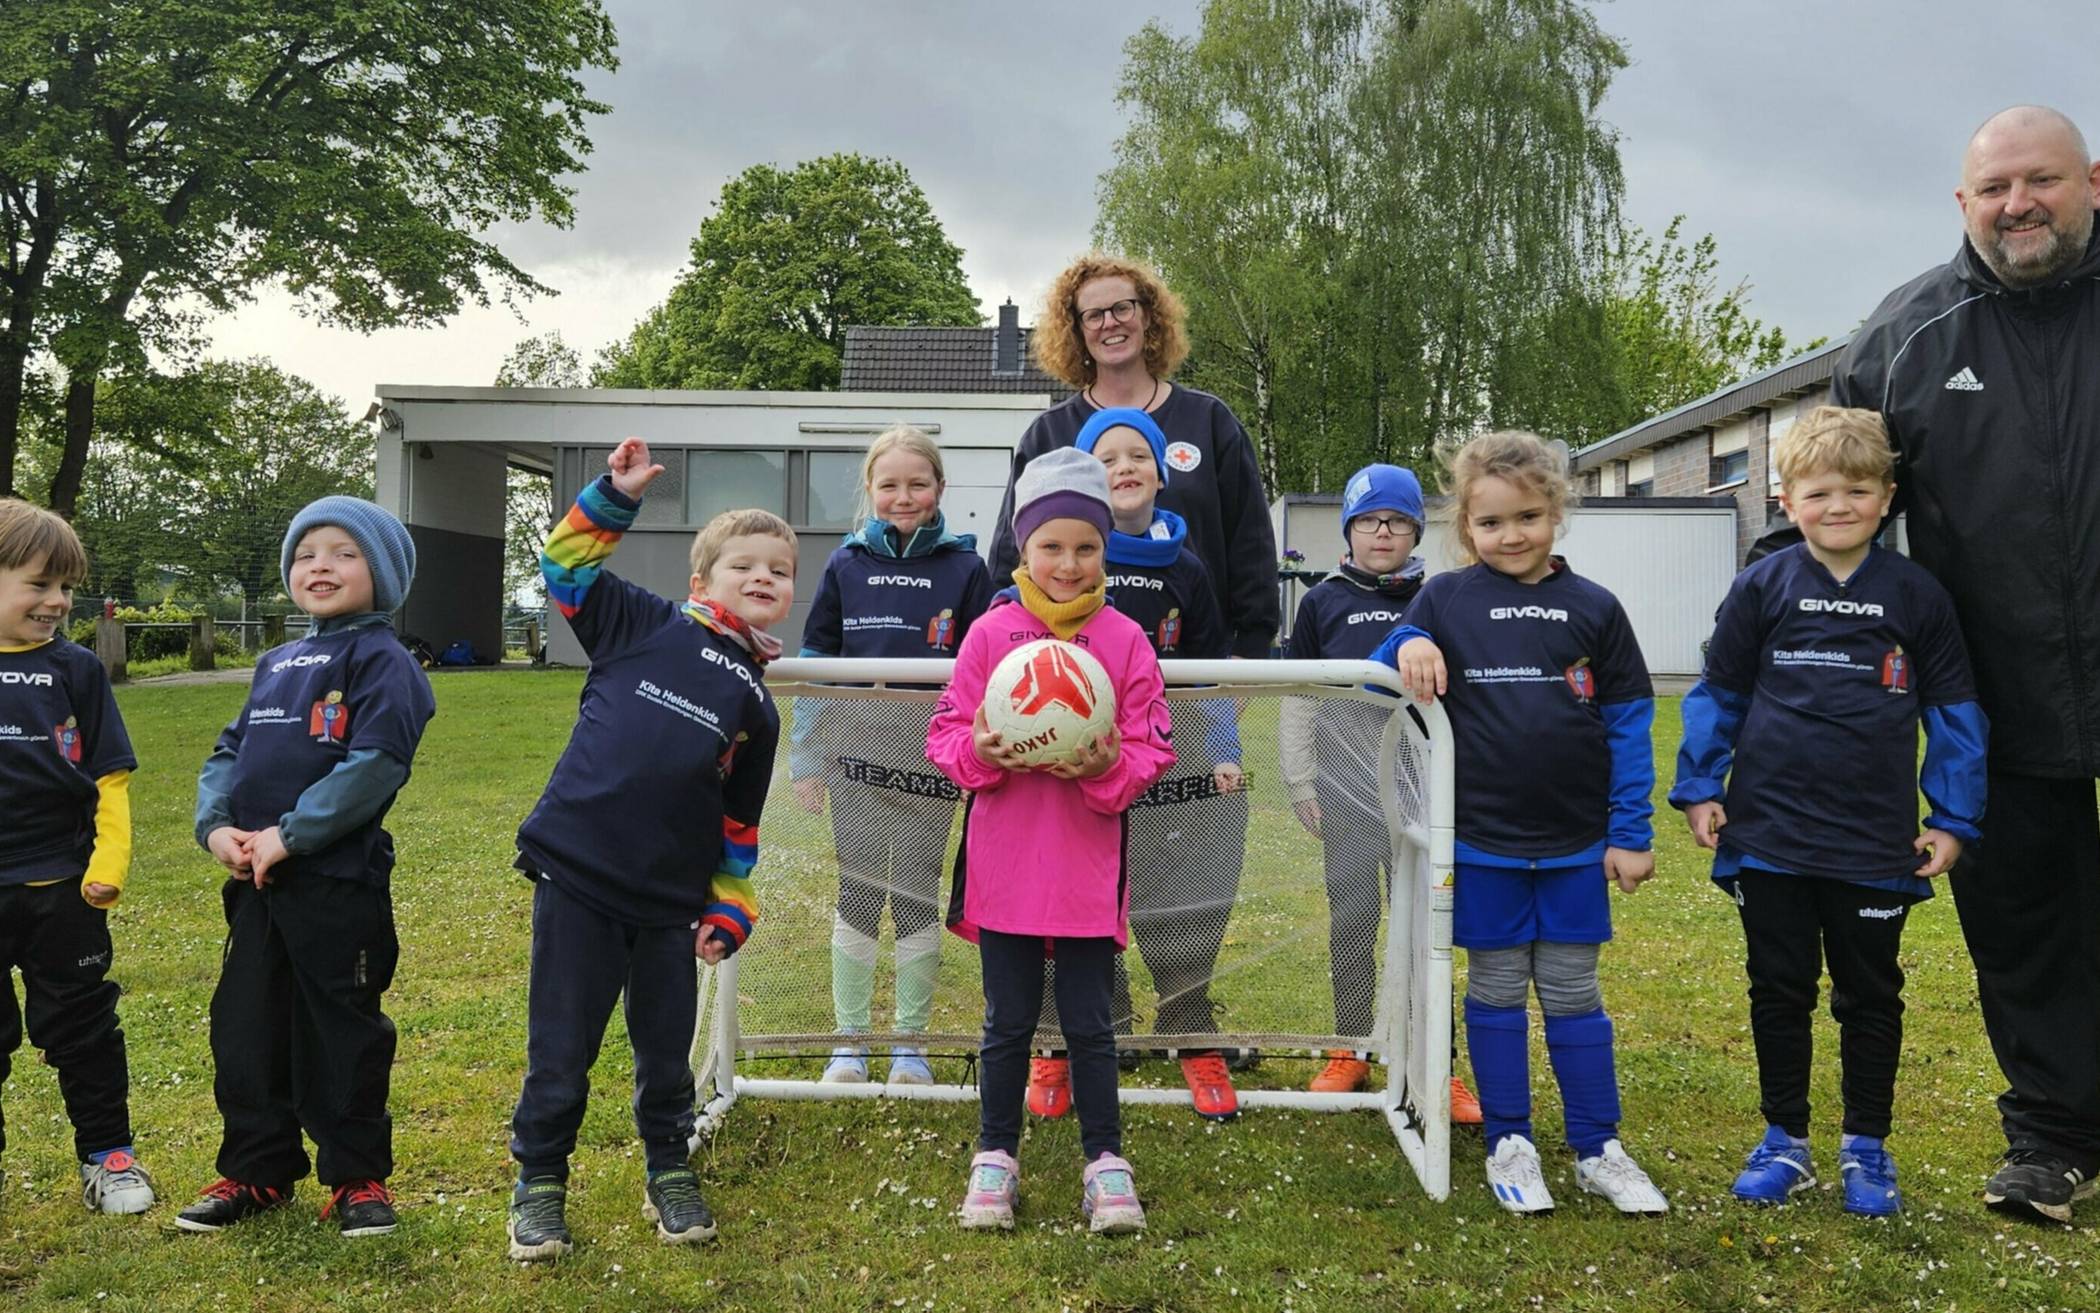  In dieser Bambini-Mannschaft kicken kleine Fußballer aus Hemmerden und Wevelinghoven gemeinsam.  